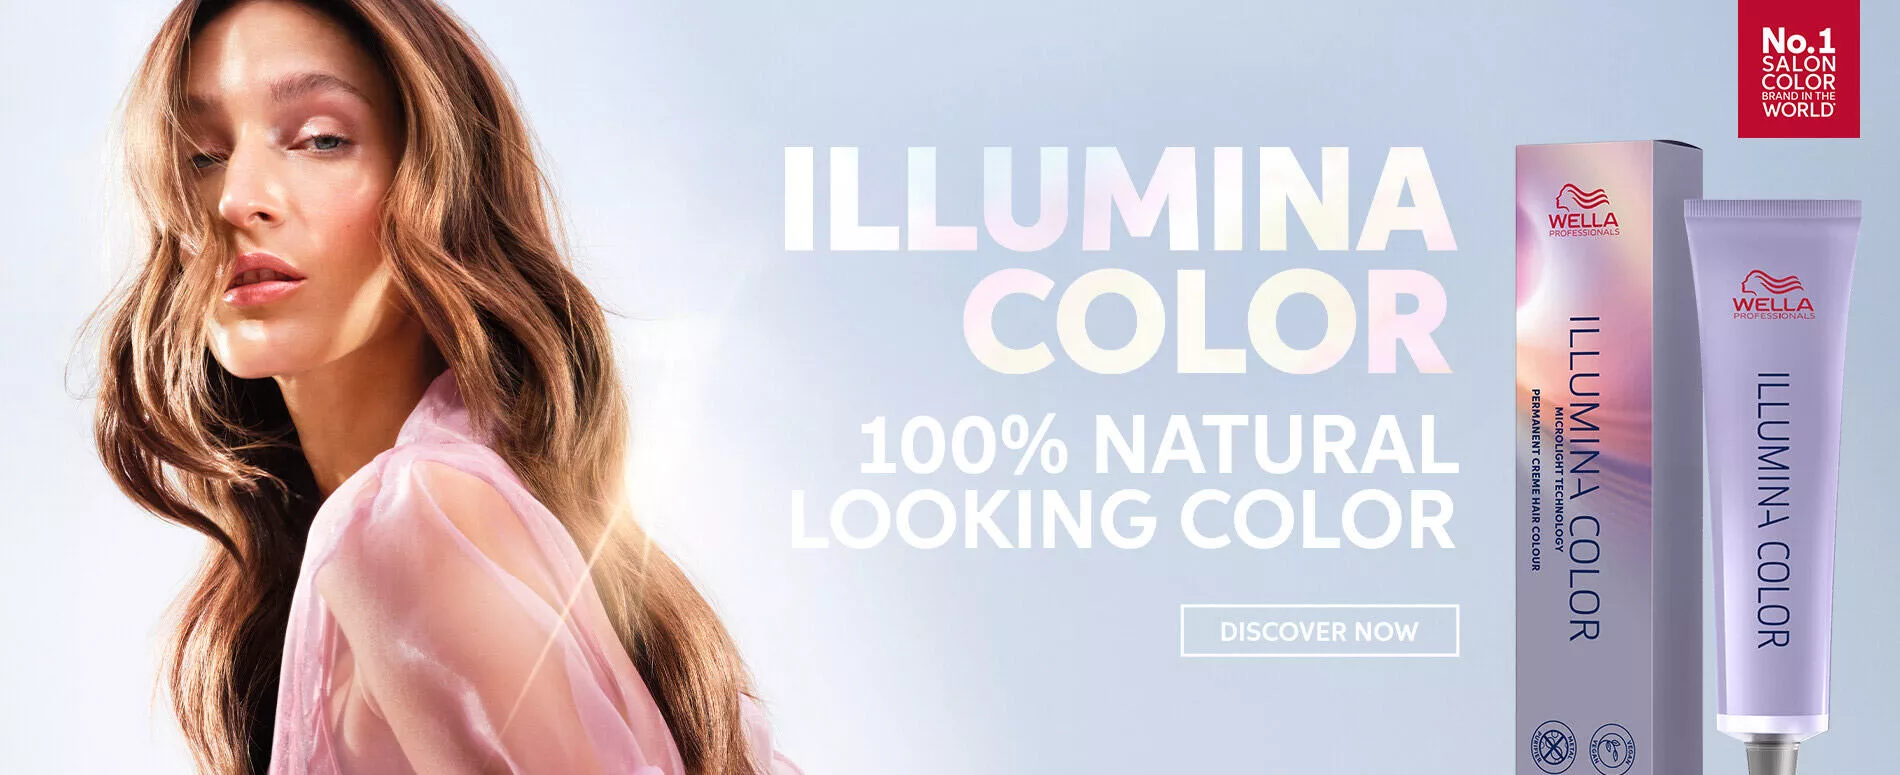 Una modella con capelli ondulati castano chiaro accanto alle immagini del prodotto Illumina Color di Wella Professionals, per un effetto 100% naturale.